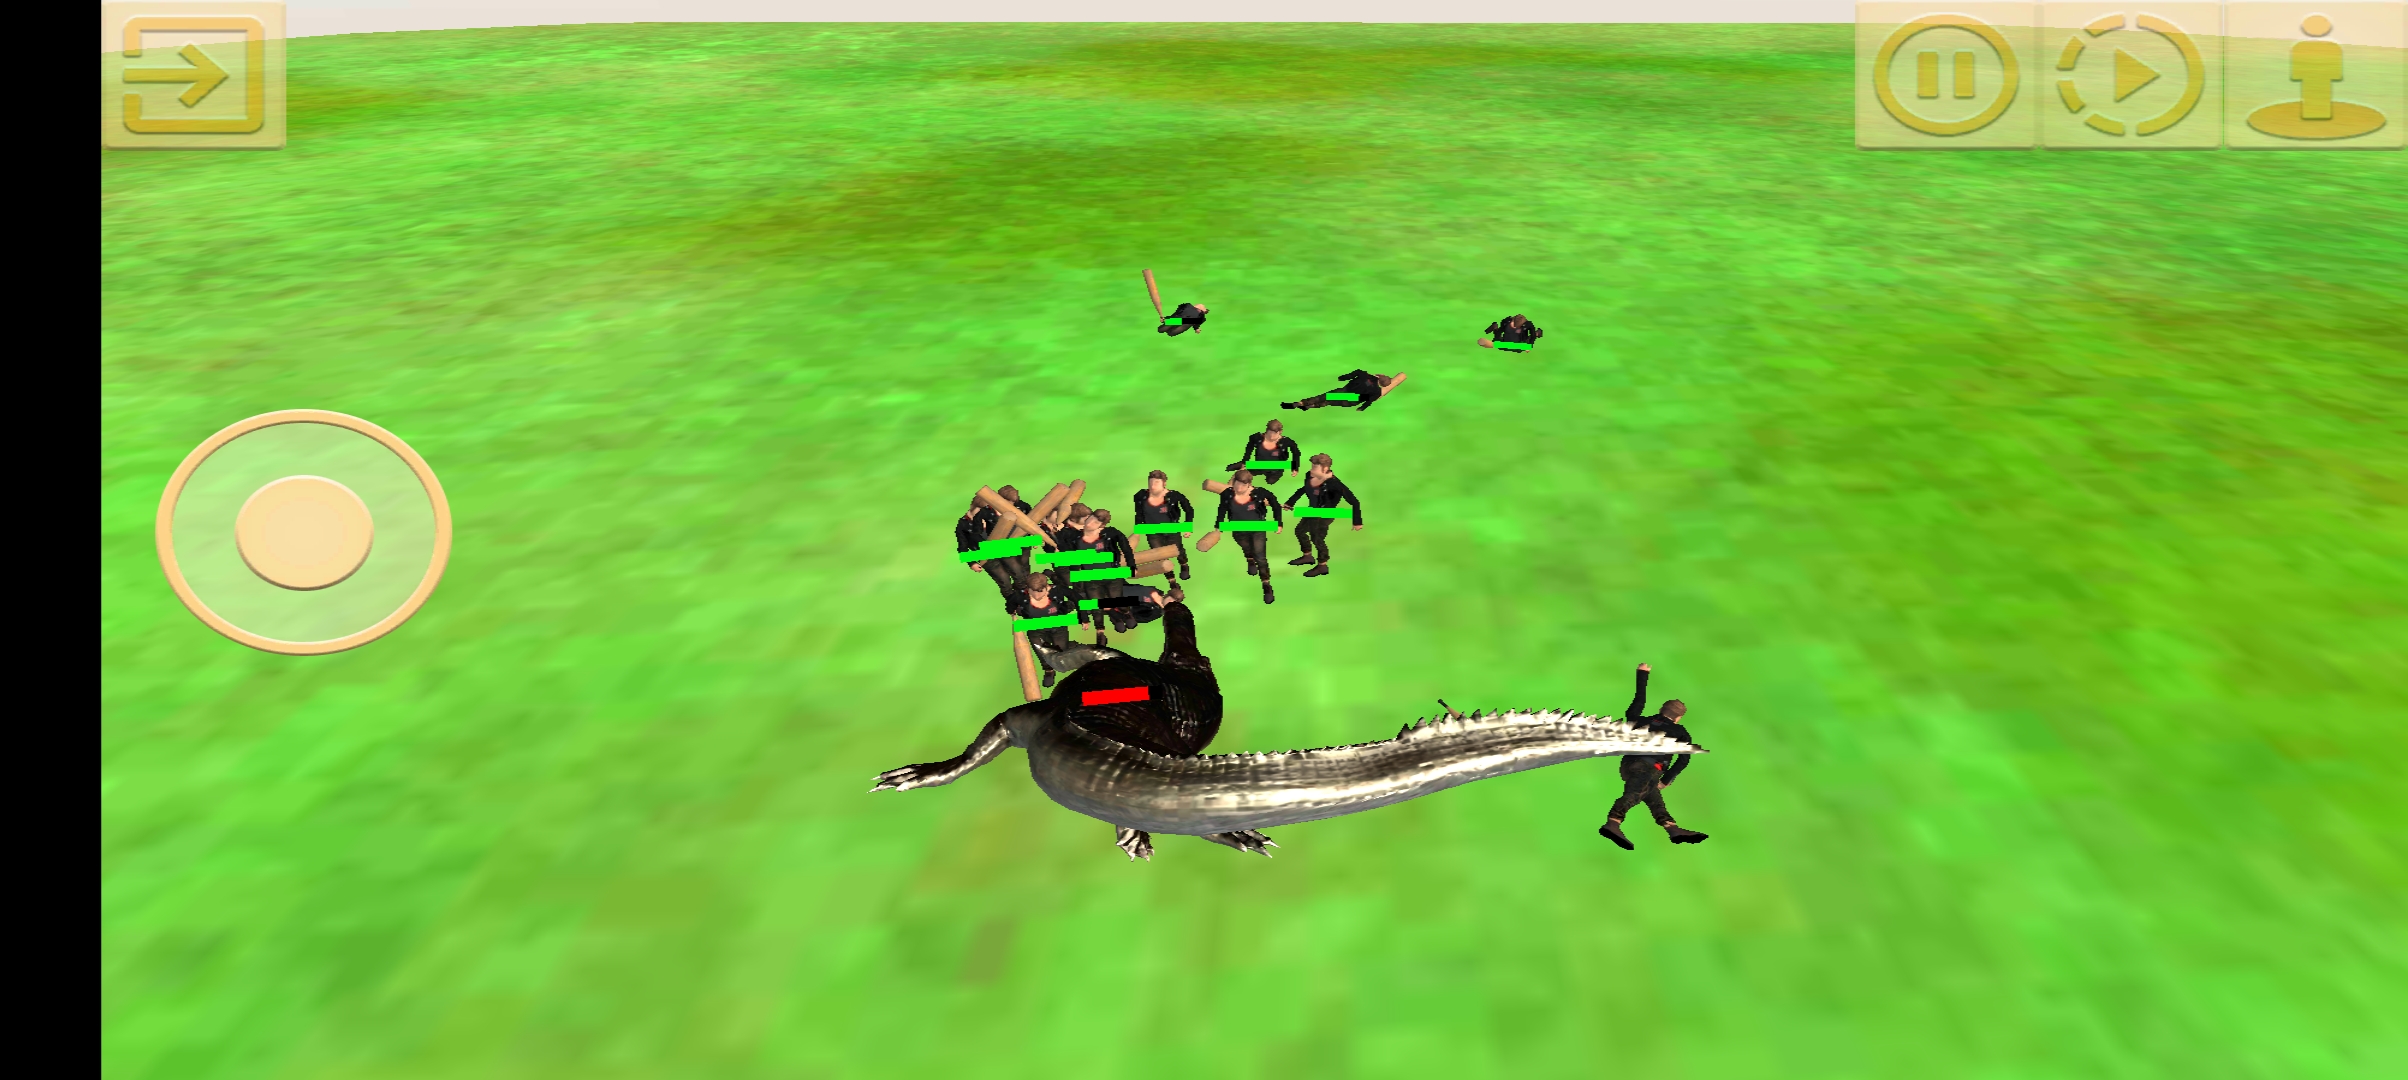 սģ(Animal Revolt Battle Simulator)v3.9.0 °